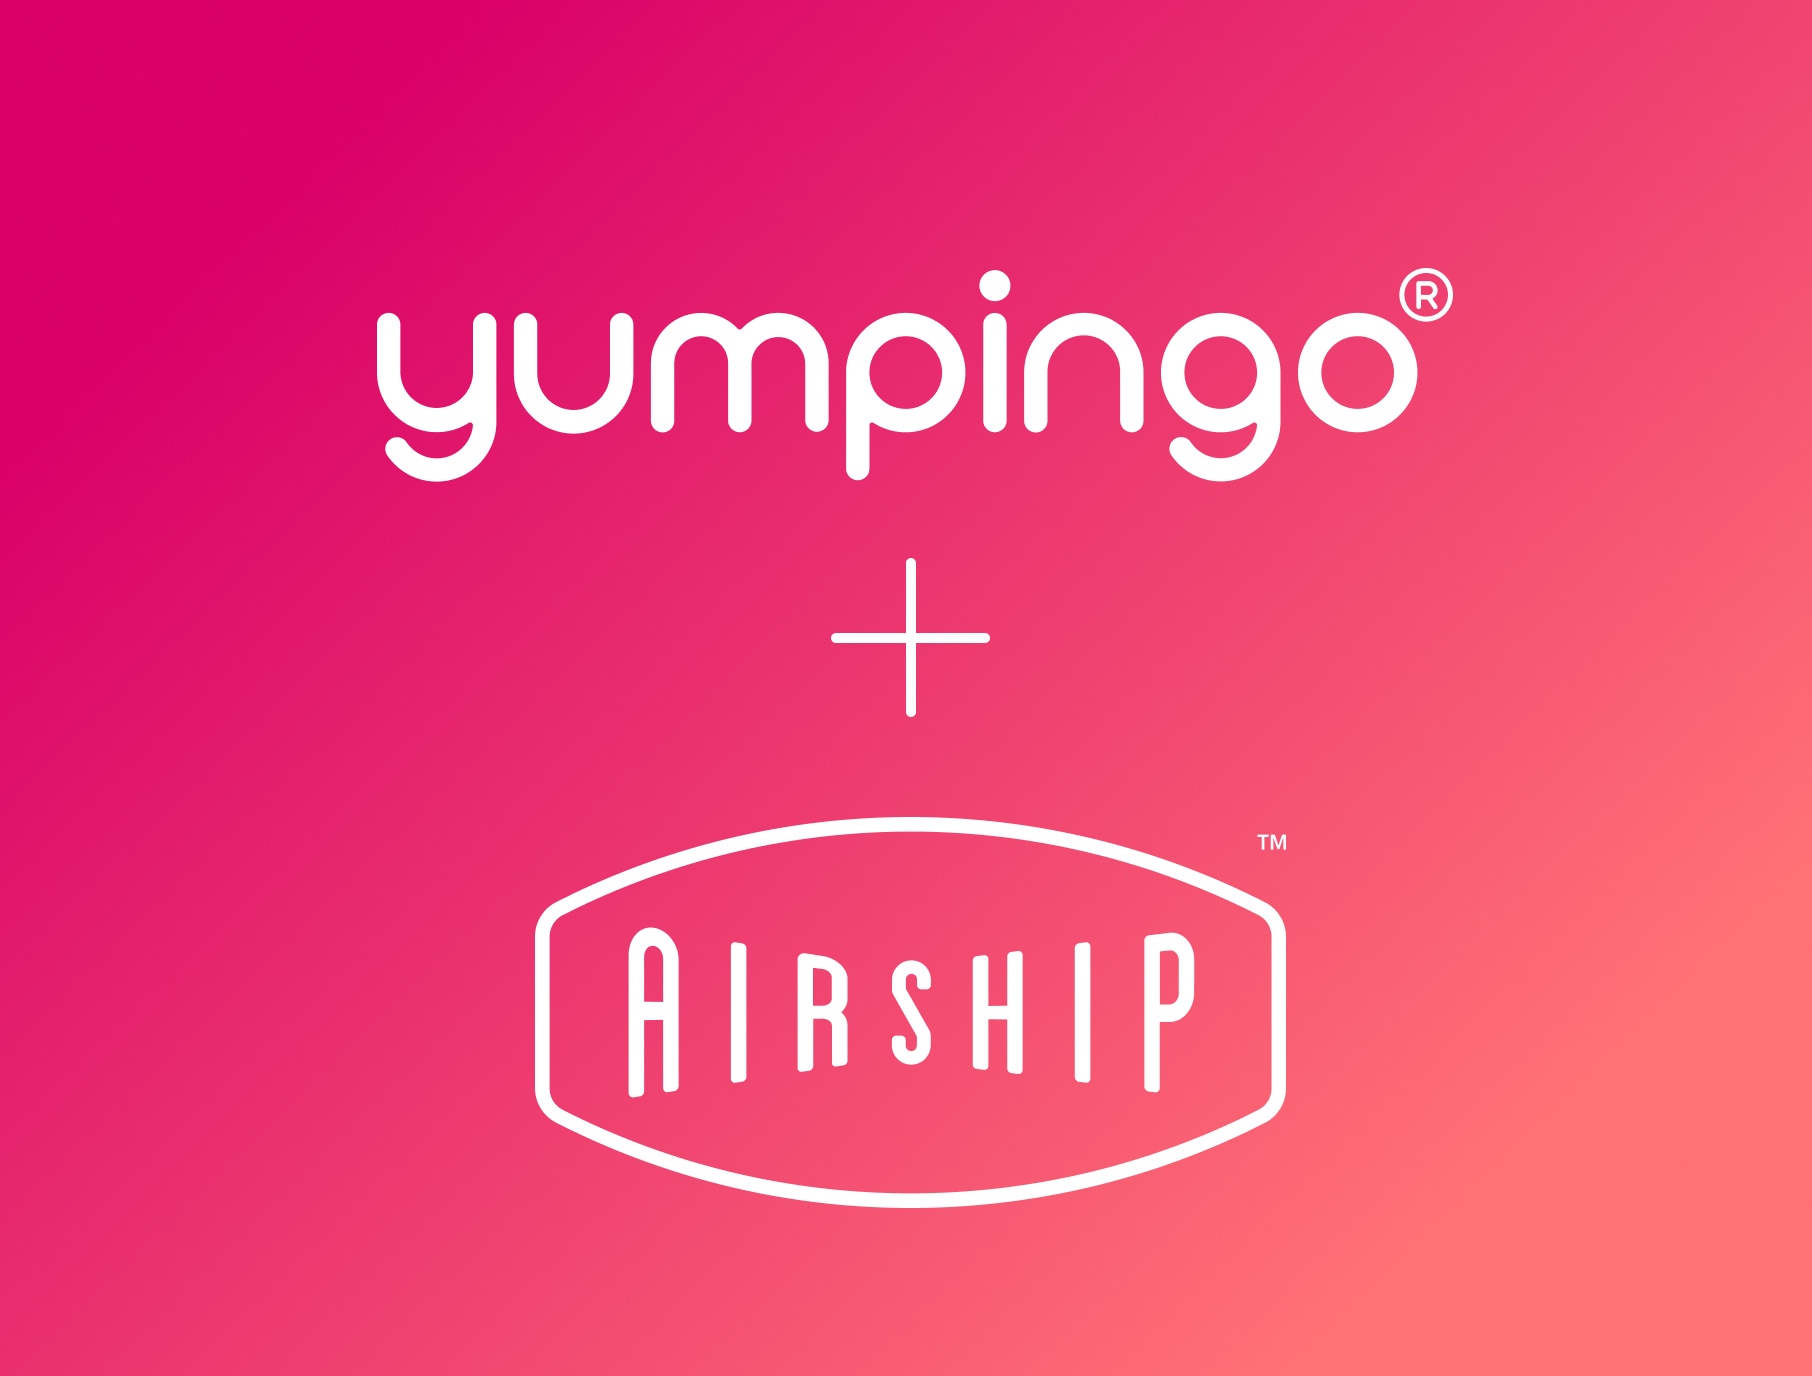 airship and yumpingo